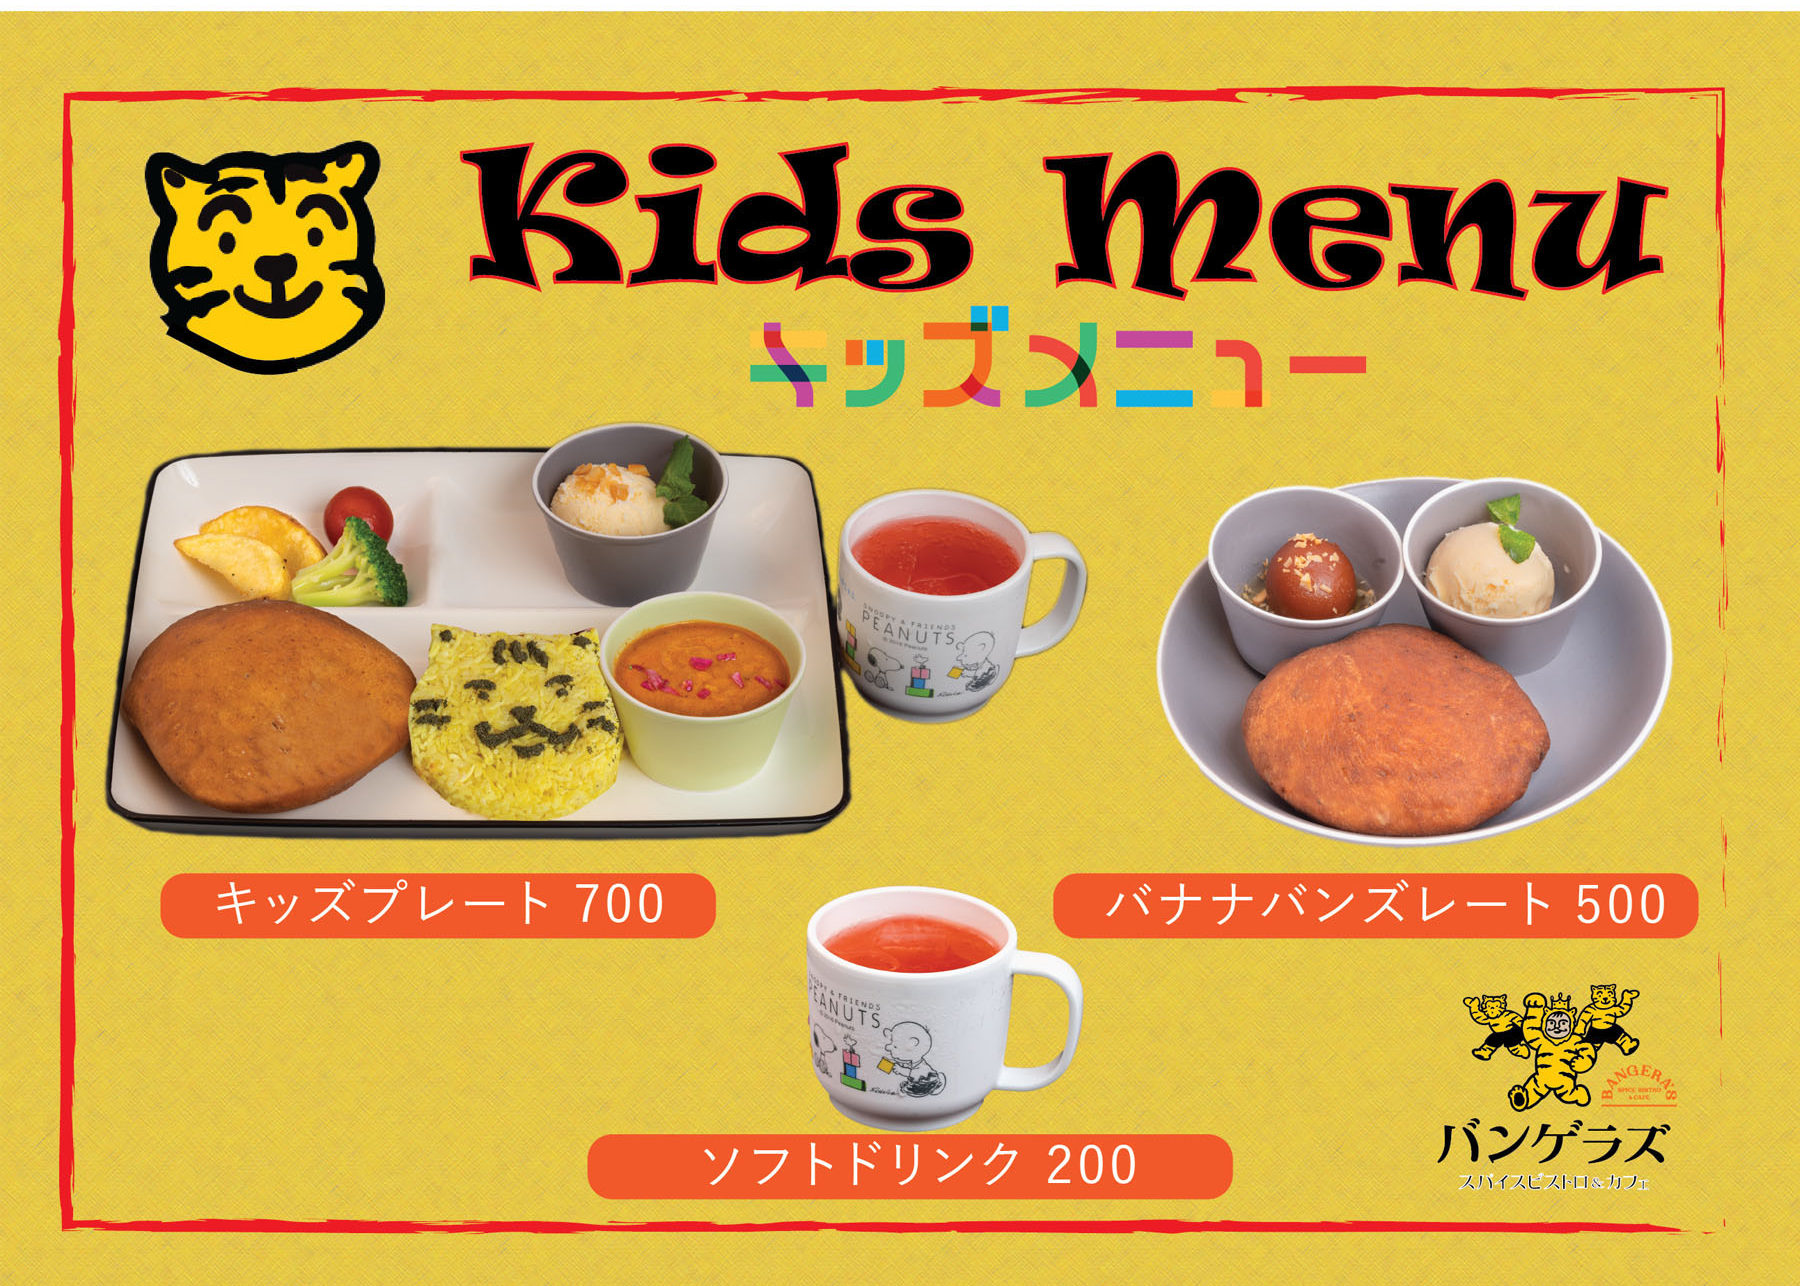 Dinner Plate 1700 / Kids menu